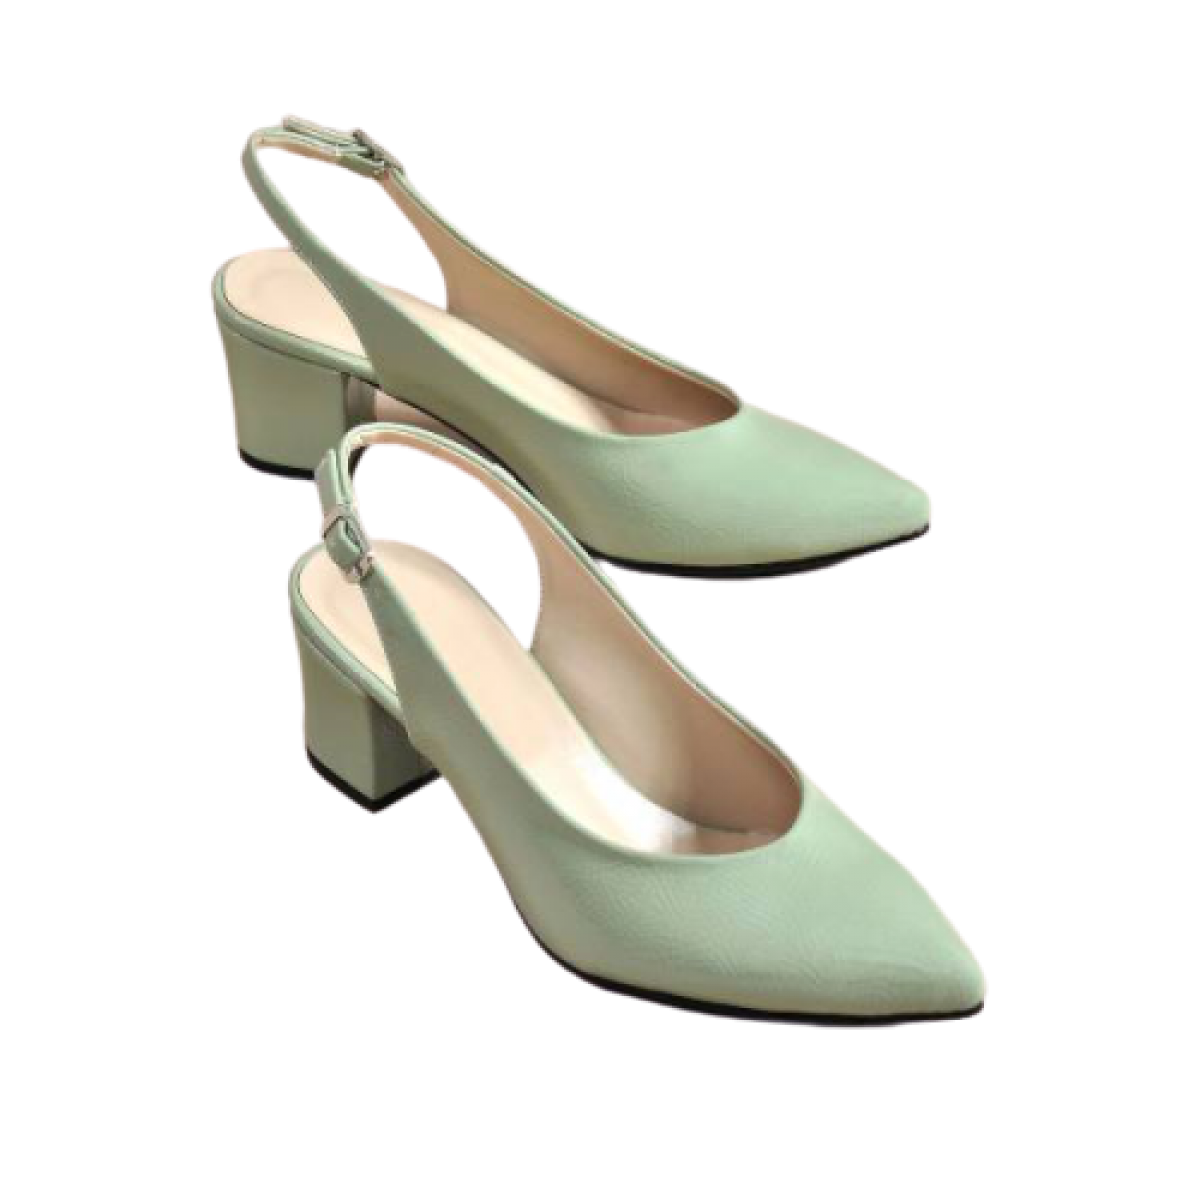 Flo Kadın  Yeşil Klasik Topuklu Ayakkabı VZN-233Y. 1